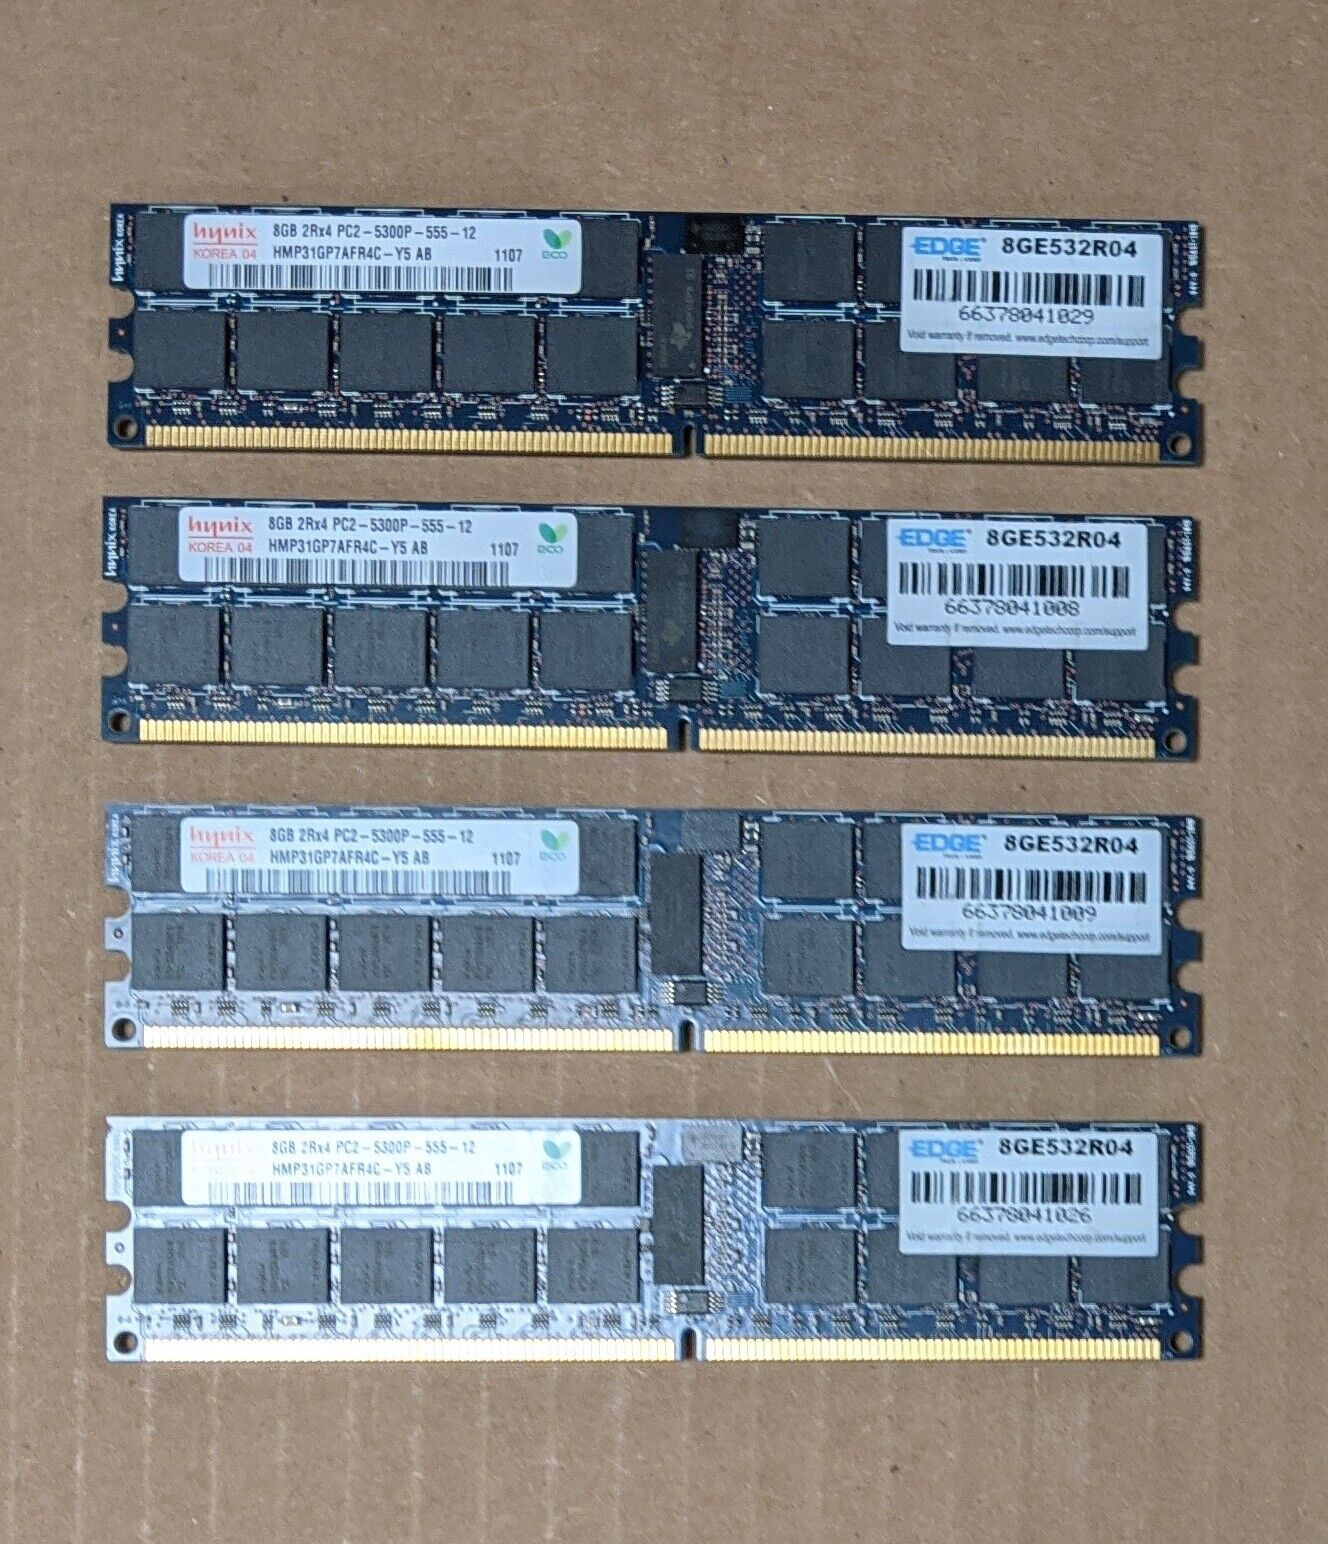 32gb Hynix 4x8GB 2Rx4 PC2-5300P-555-2 DDR2 SDRAM Server Memory HMP31GP7AFR4C-Y5